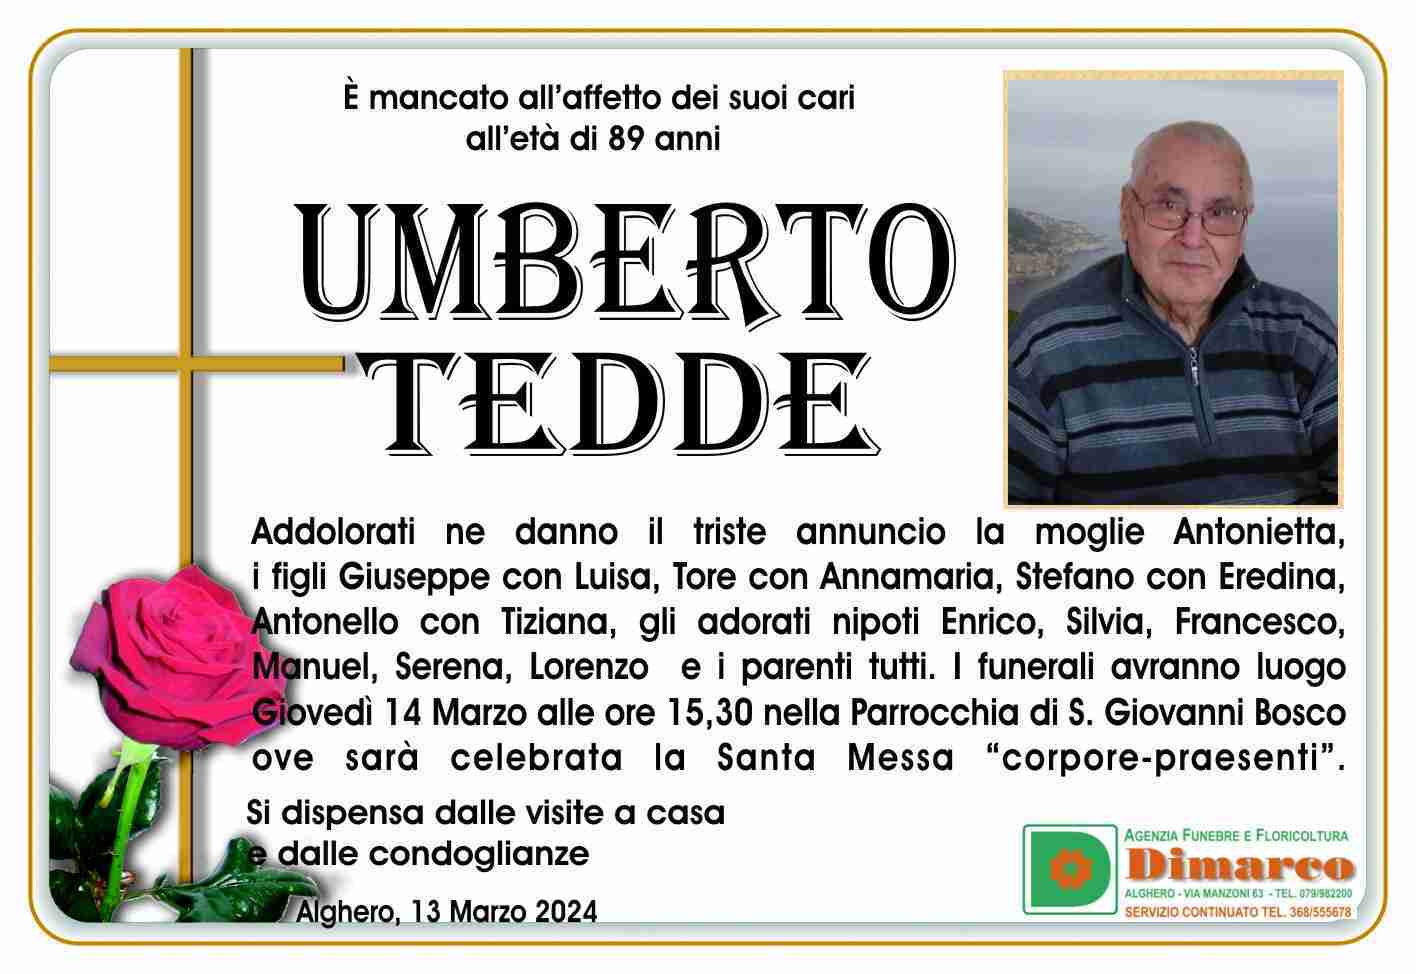 Umberto Tedde